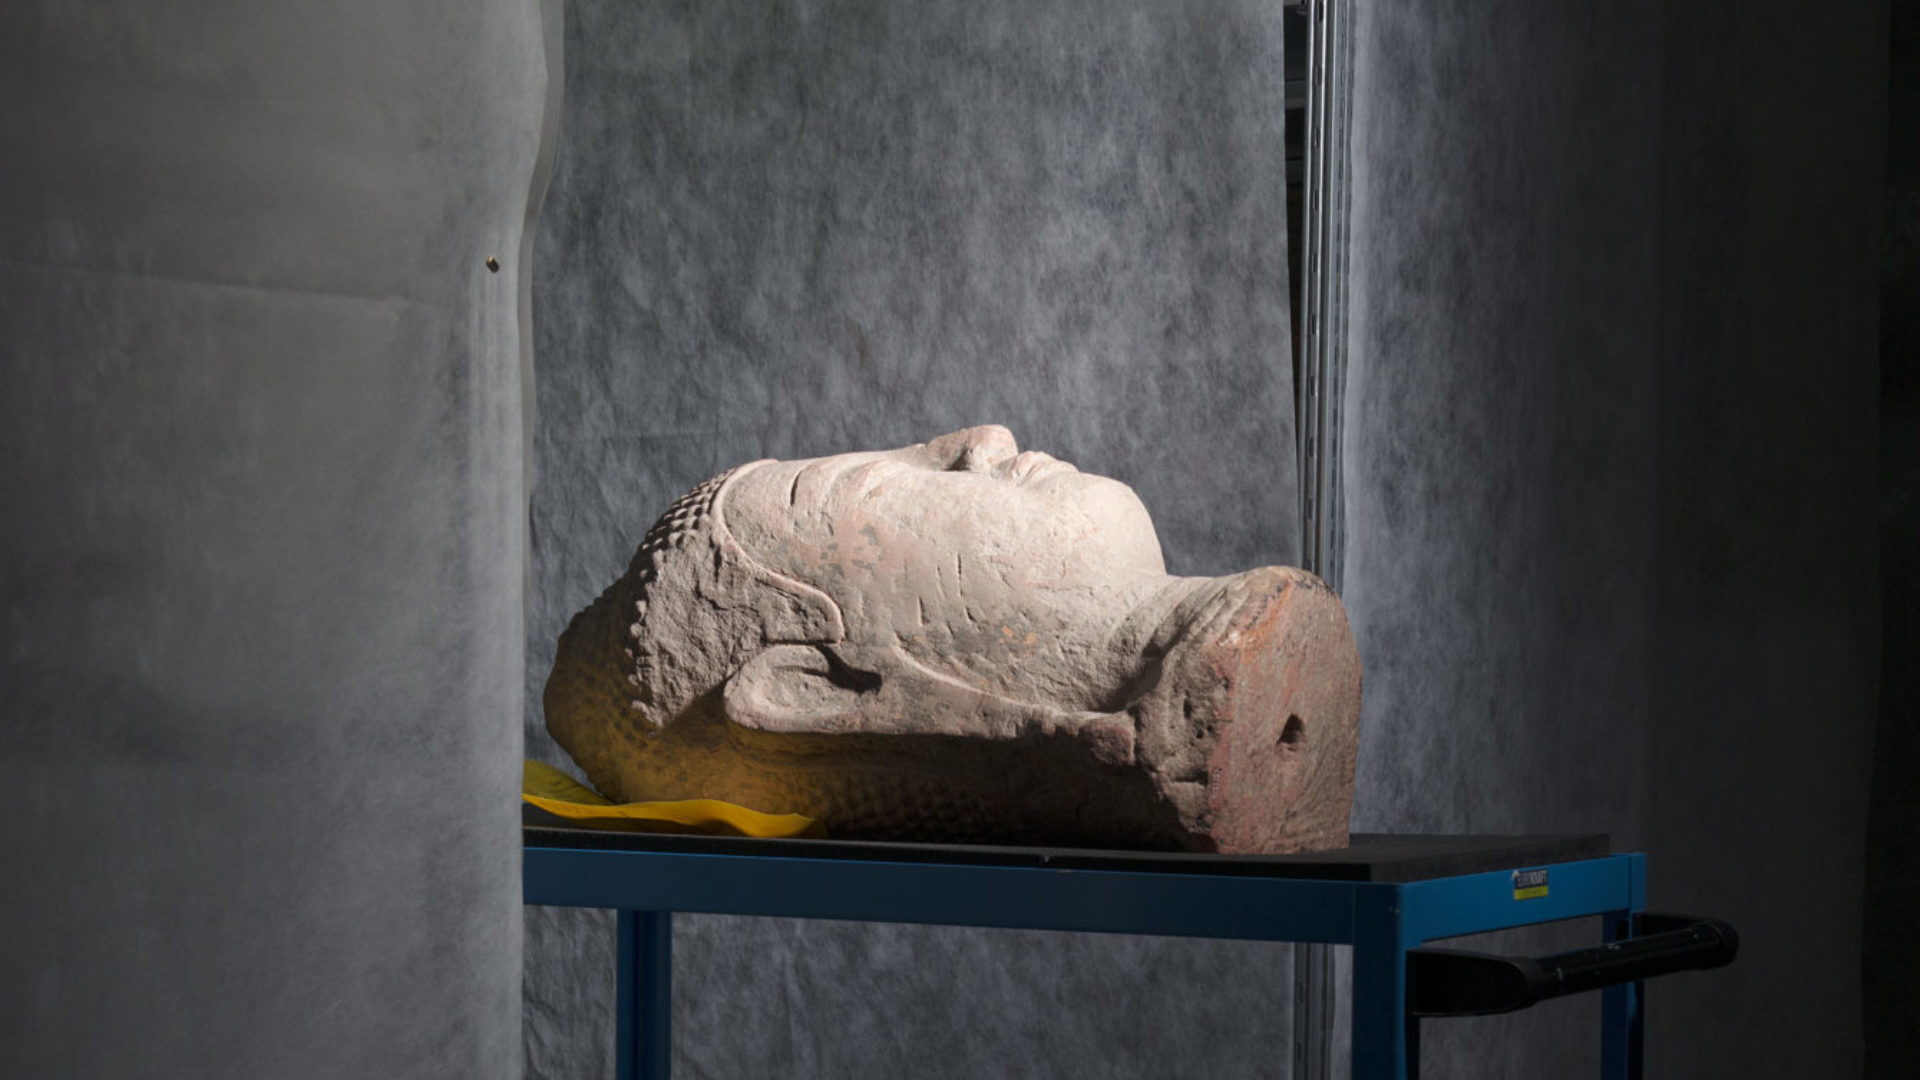 Tête de Bouddha de Thaïlande en pierre rougeâtre, photo prise au MEN de Neuchâtel  (photo Anne Golaz)